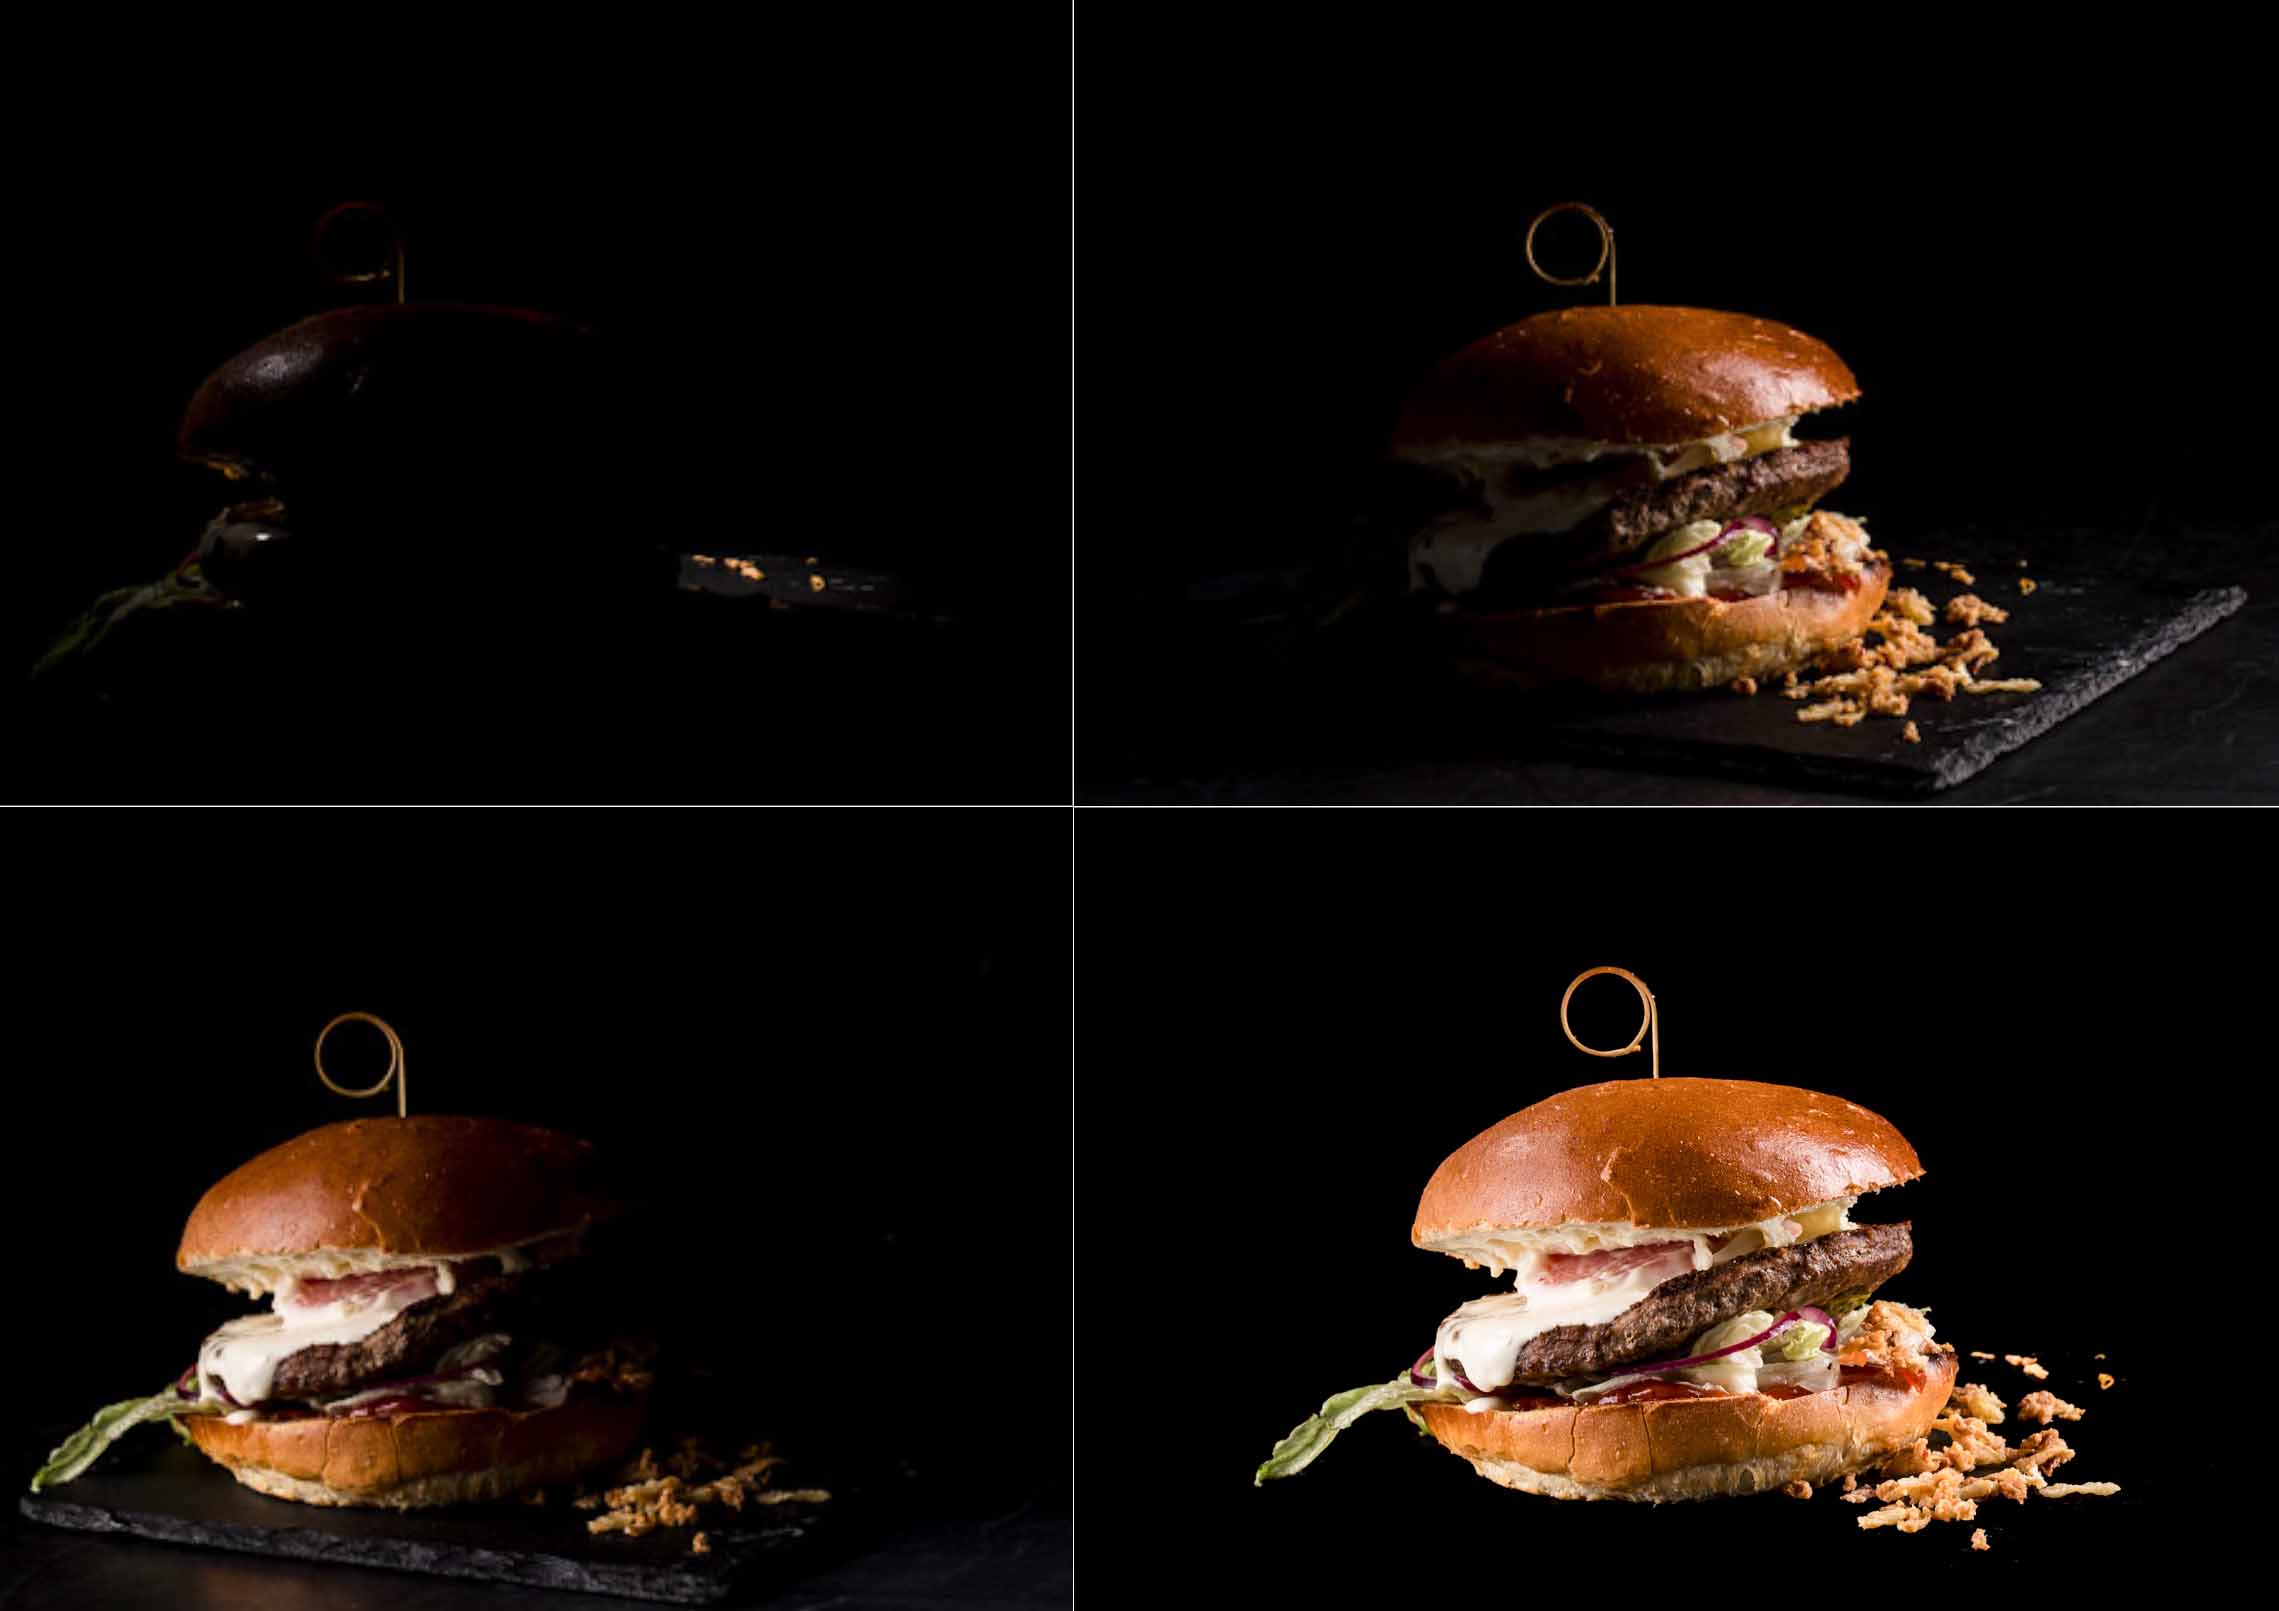 apetyczne zdjęcia burgerów - sesja kulinarna Wrocław - światło w fotografii kulinarnej